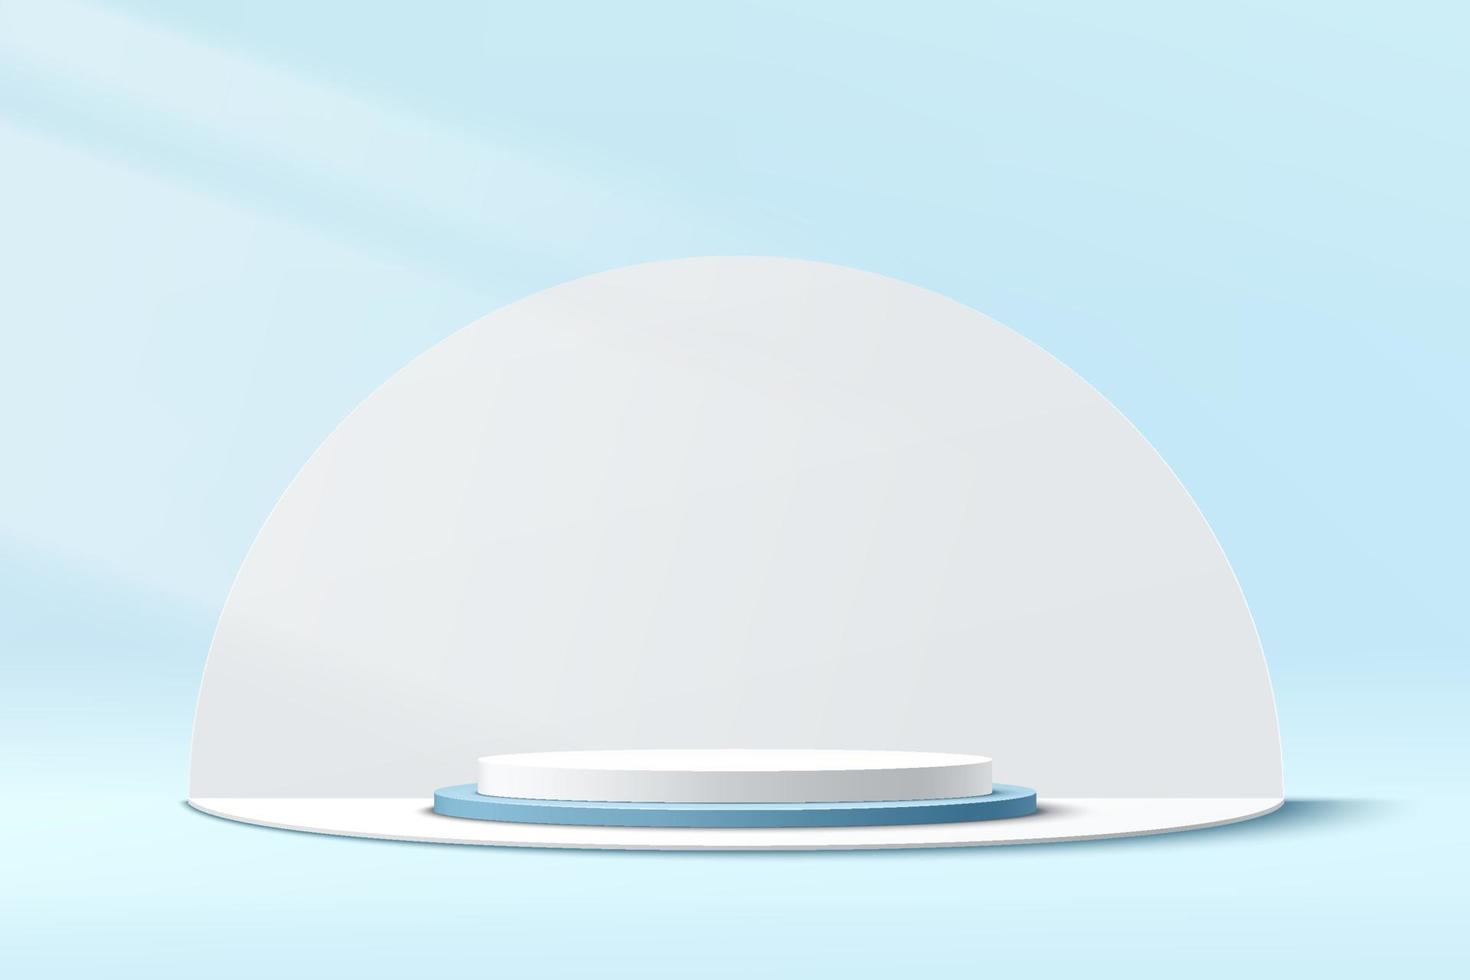 pódio de pedestal de cilindro branco e azul 3d abstrato com pano de fundo branco em forma de semicírculo. cena de parede mínima azul pastel para apresentação de exibição do produto. design de plataforma geométrica de renderização vetorial. vetor